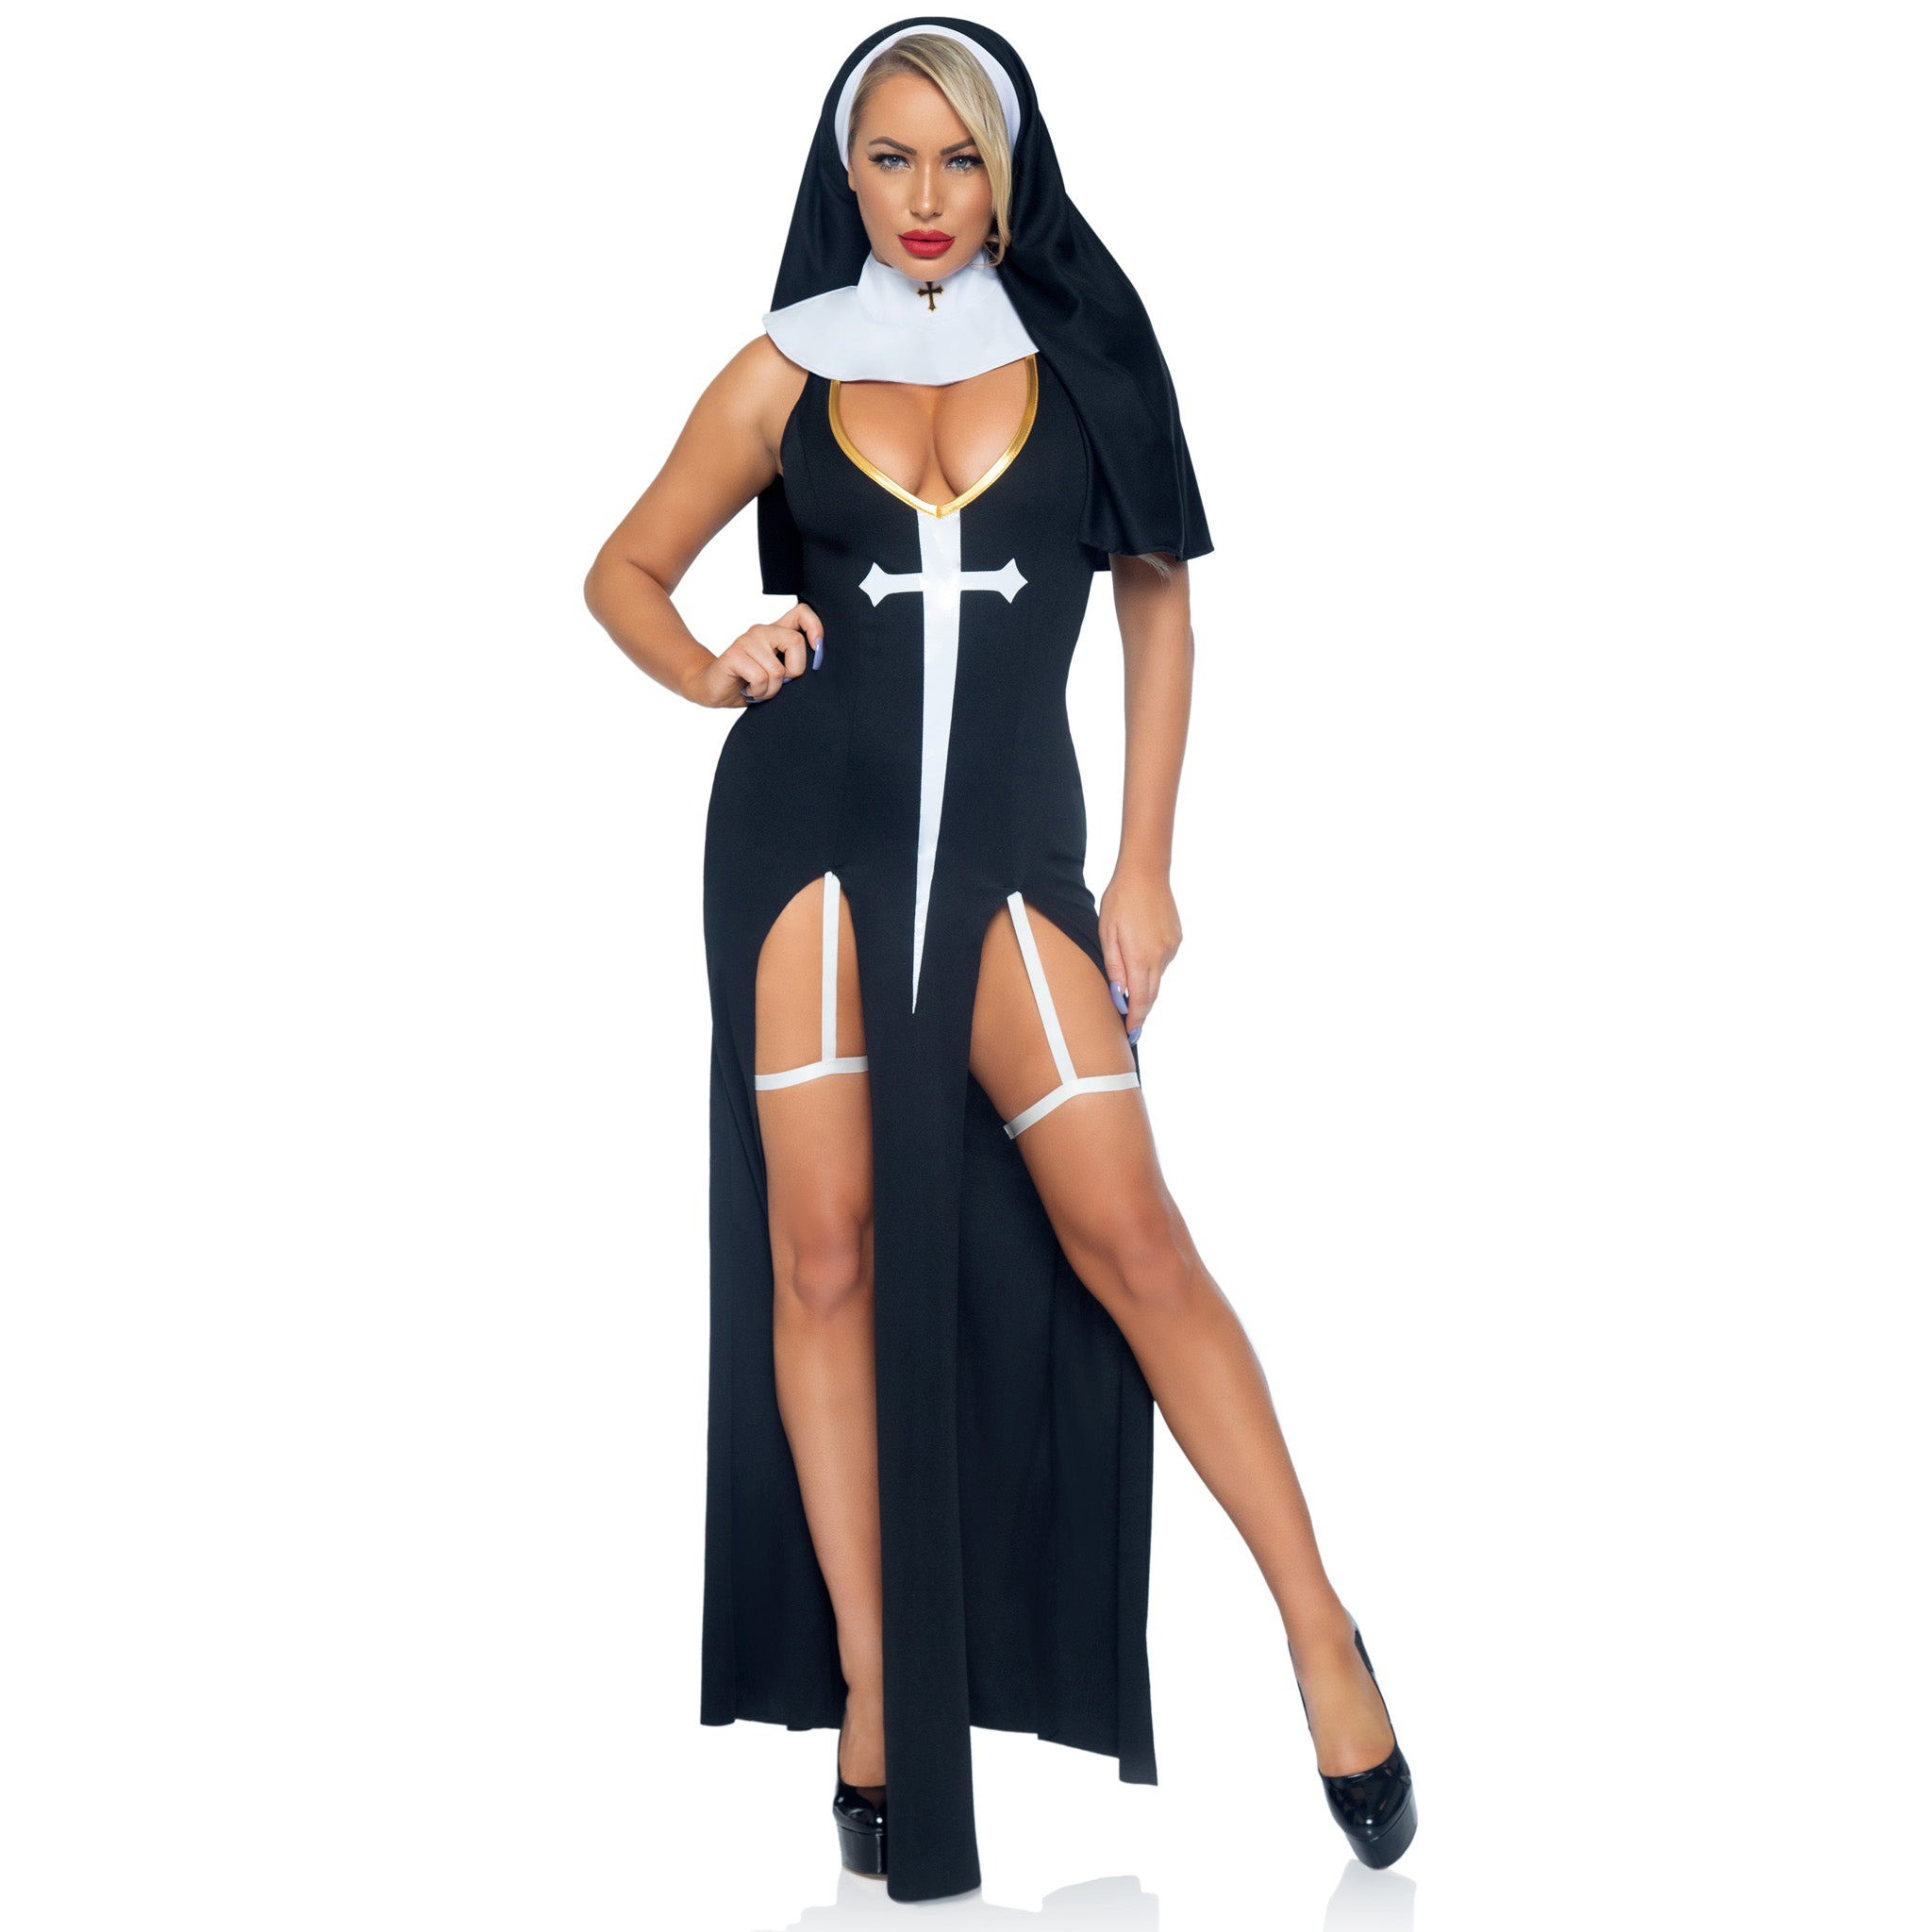 Костюм знойной грешницы-монахини.